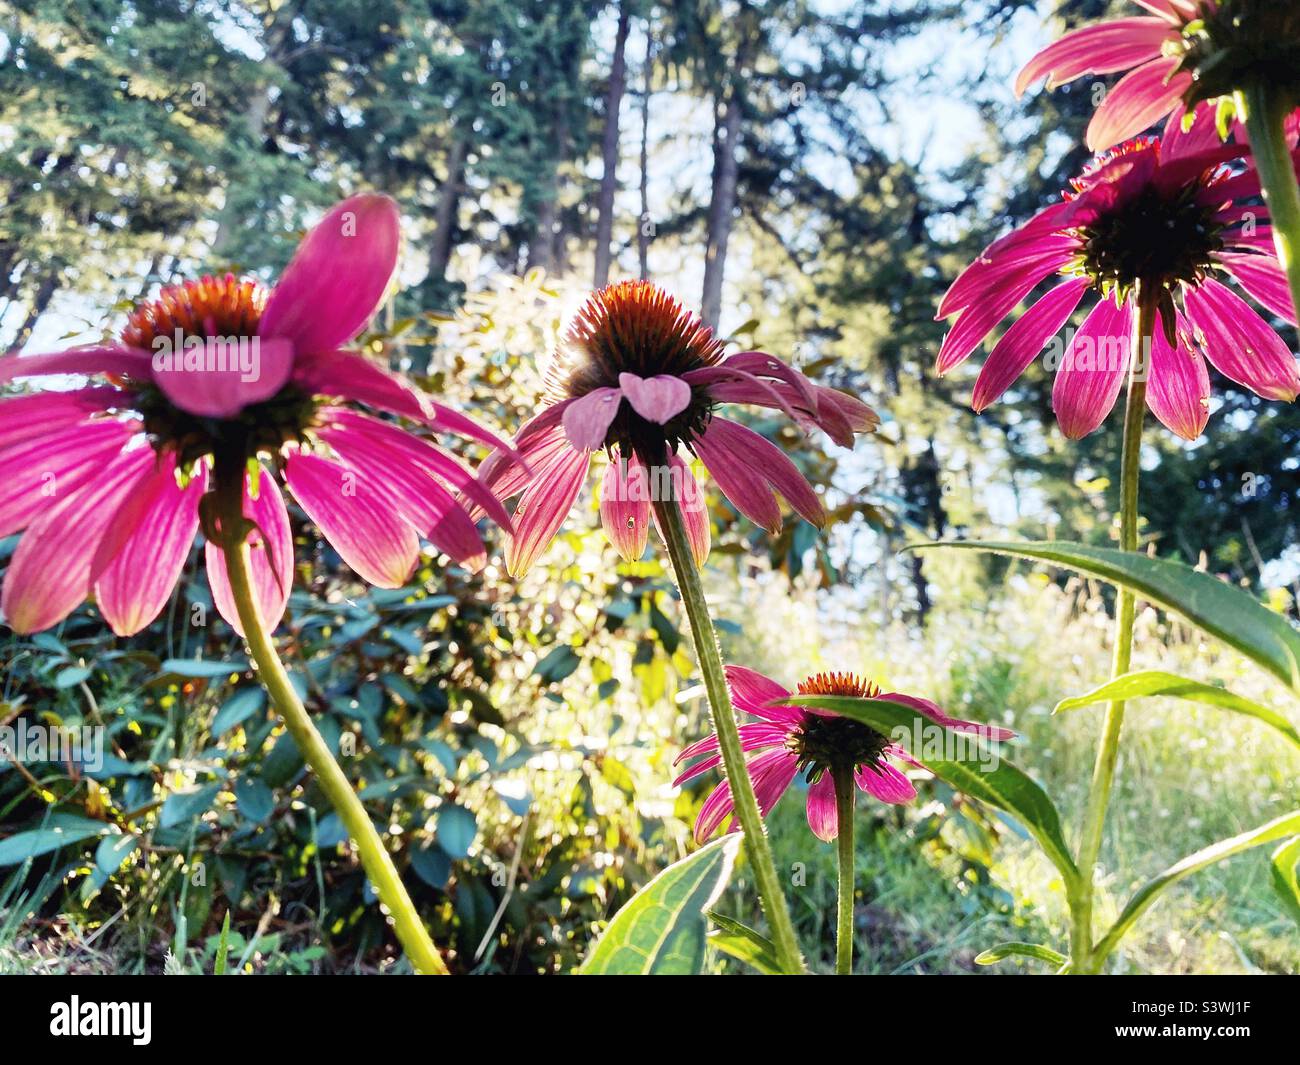 Echinacea 'cheyenne spirit' flowers. Stock Photo